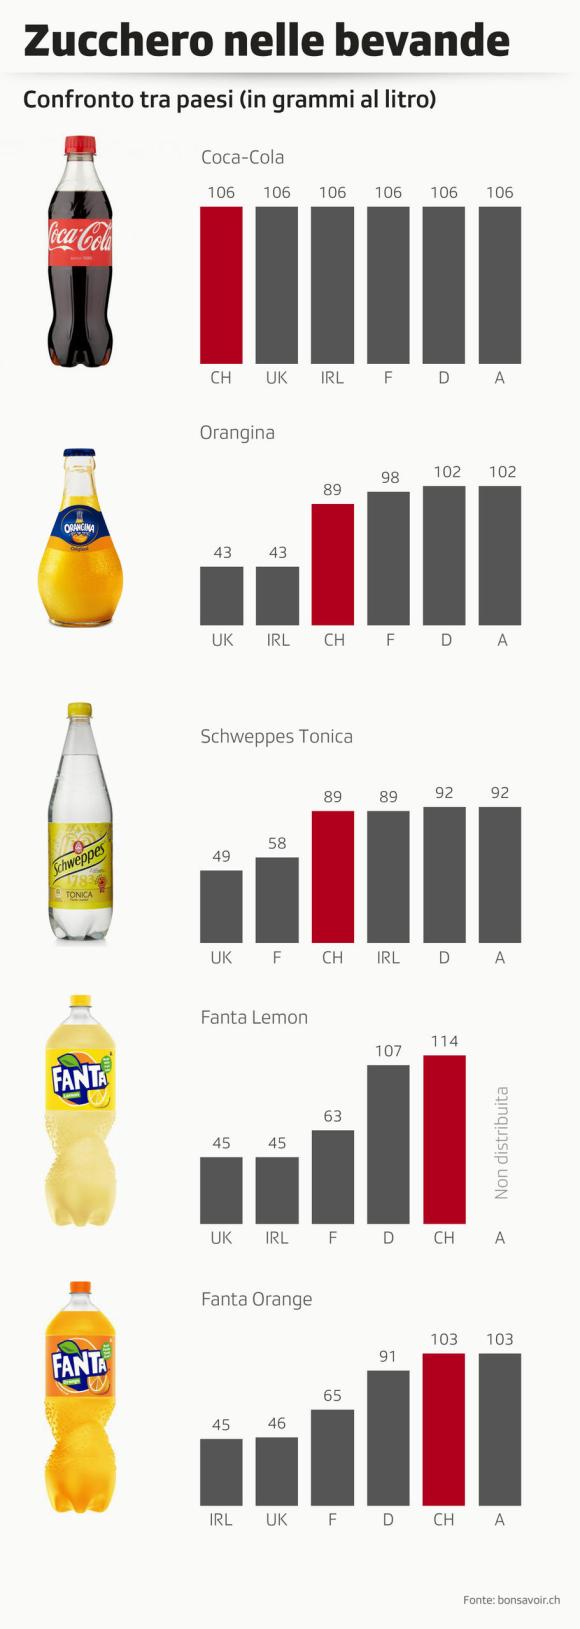 Il contenuto di zucchero nelle bevande in Svizzera e in altri paesi europei. Dove c è una tassa la percentuale è più bassa